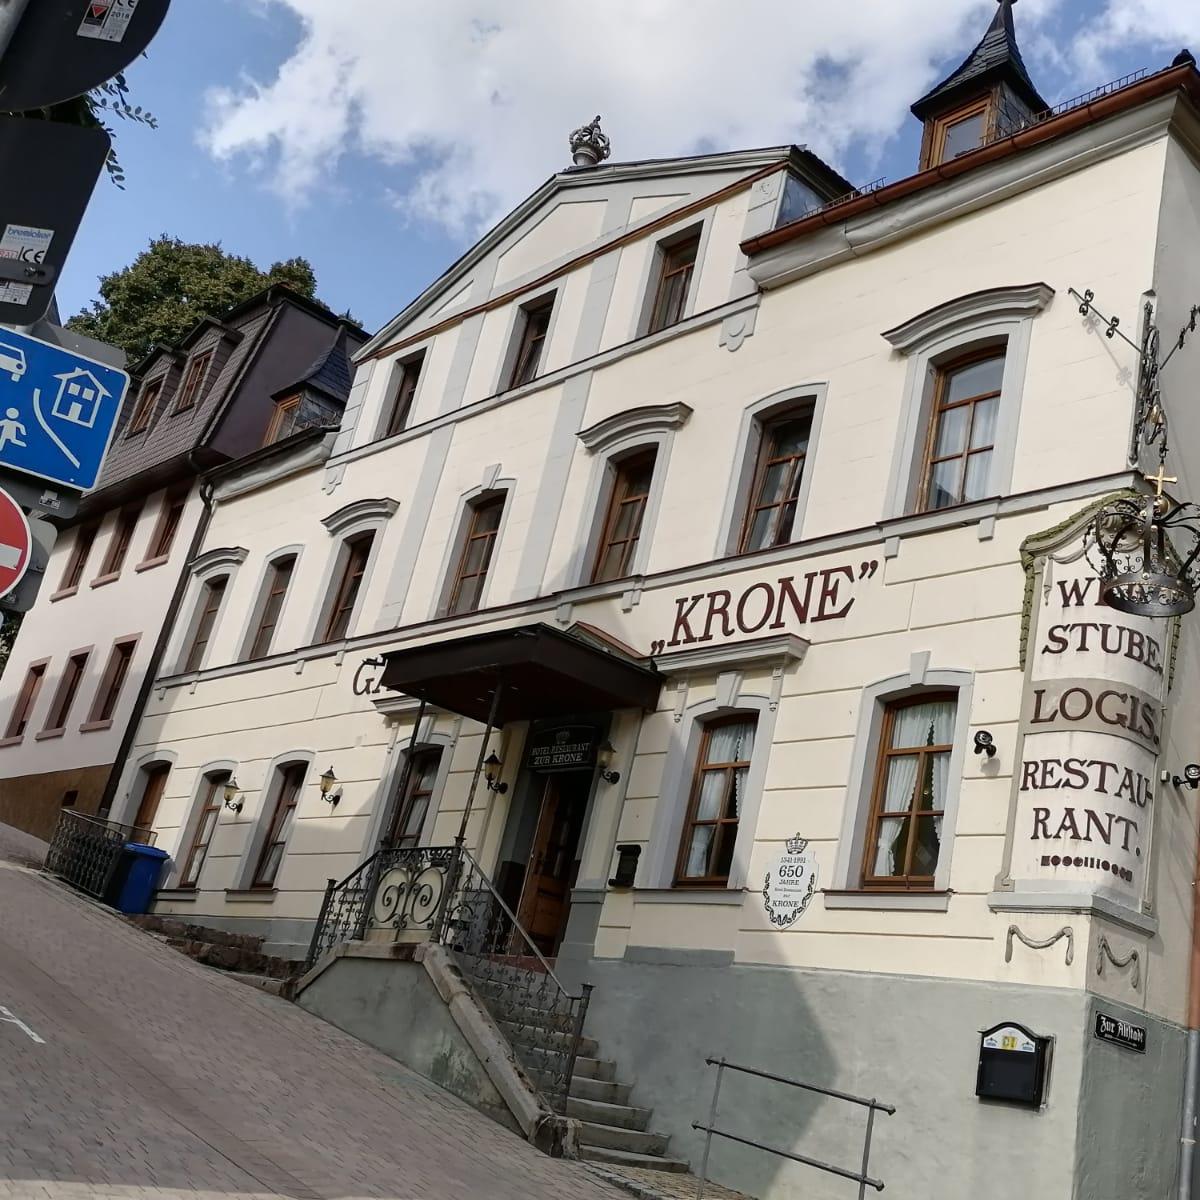 Restaurant "Hotel-Restaurant-Krone" in Bad Brückenau